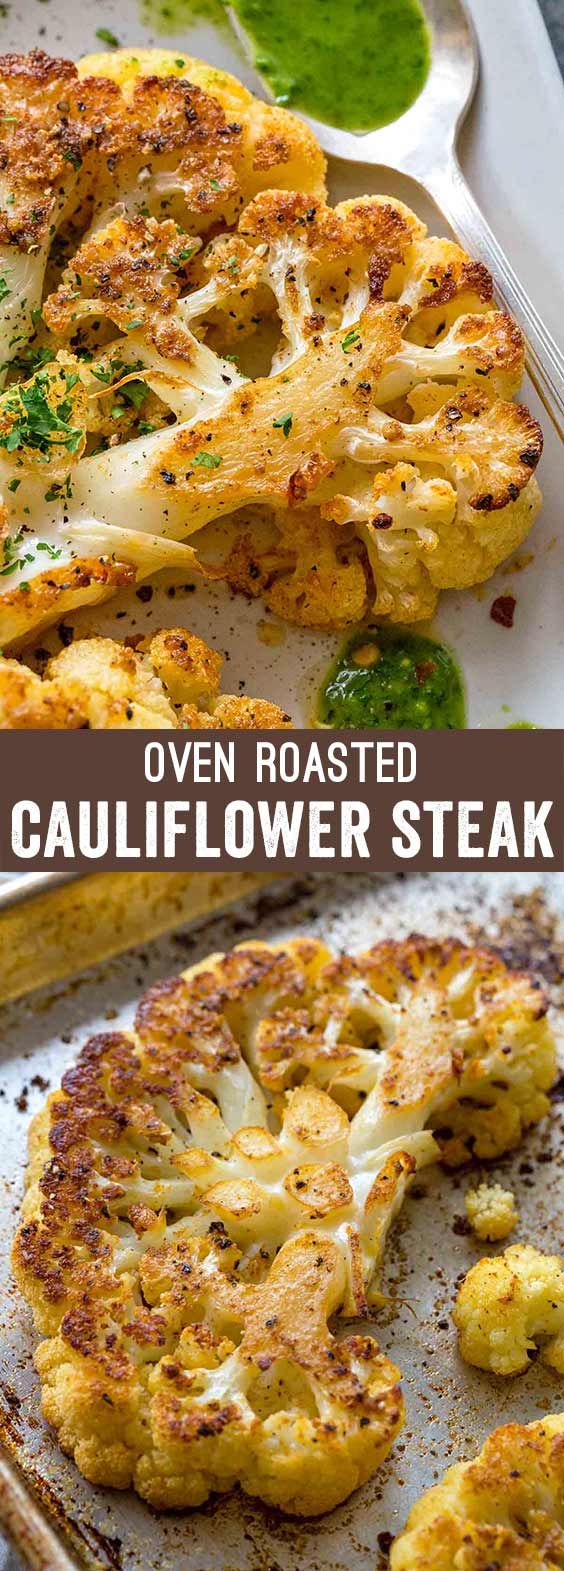 Roasted Cauliflower Steaks